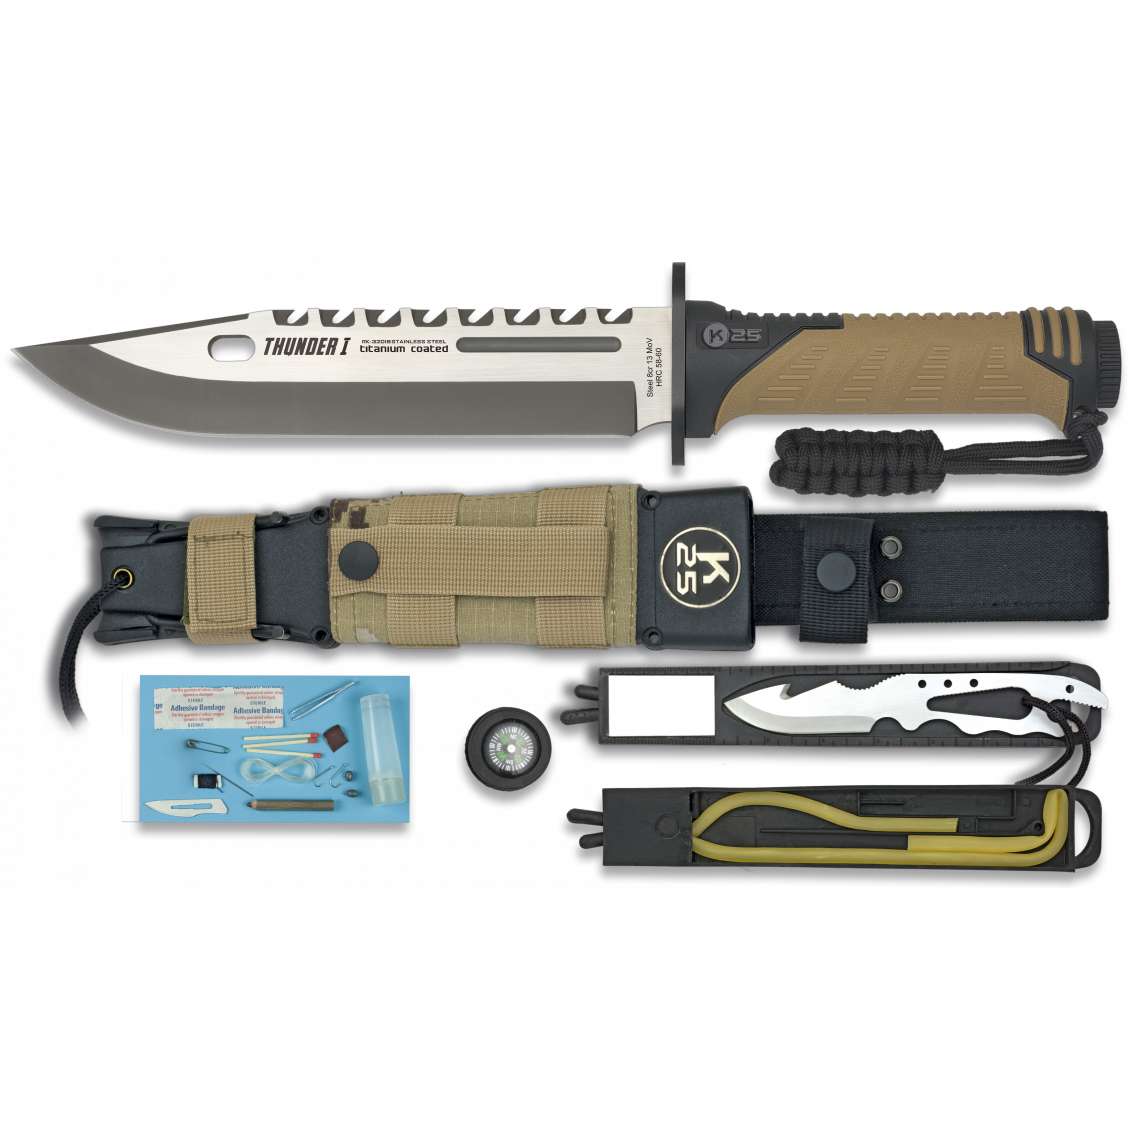 Couteau de survie THUNDER 1 32018 coyote 32.5 cm - couteau de survie - K25